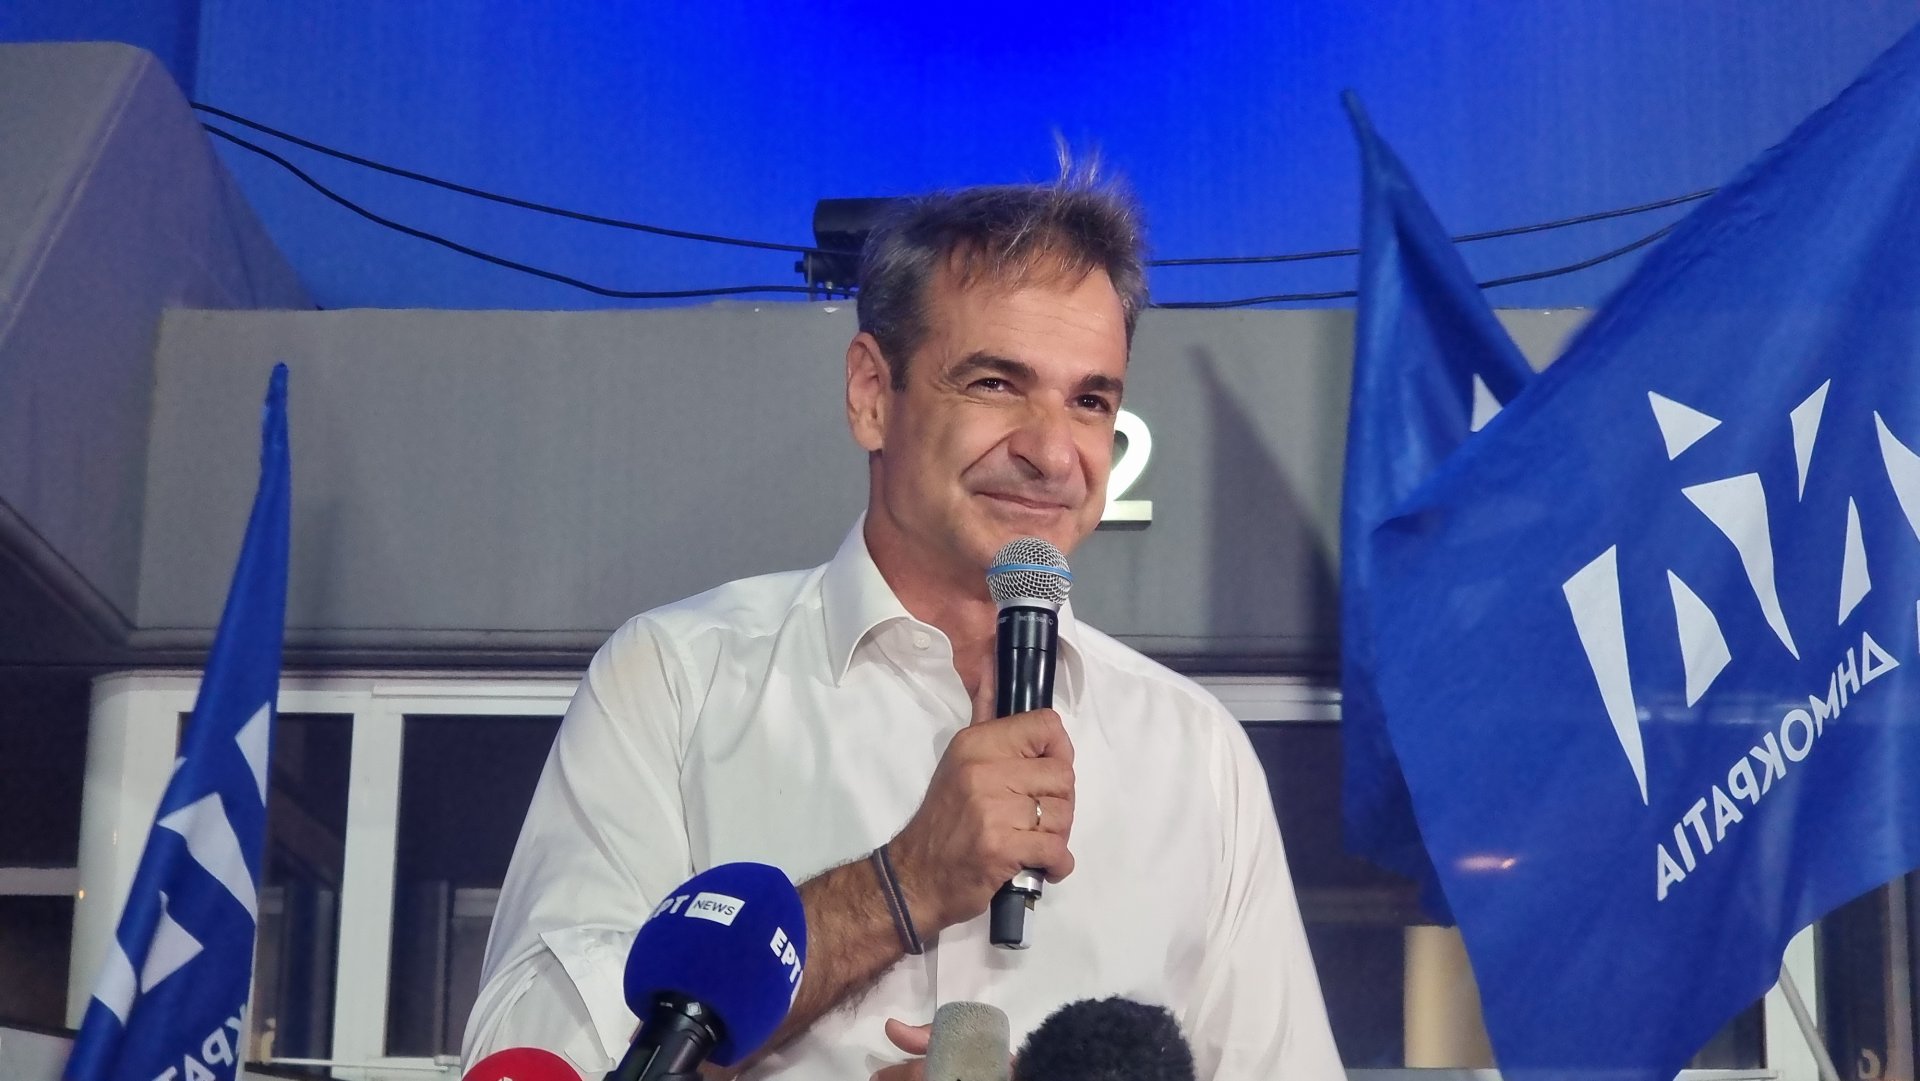  Лидерът на "Нова демокрация" Кириакос Мицотакис говори пред привърженици на партията си след изборната победа 